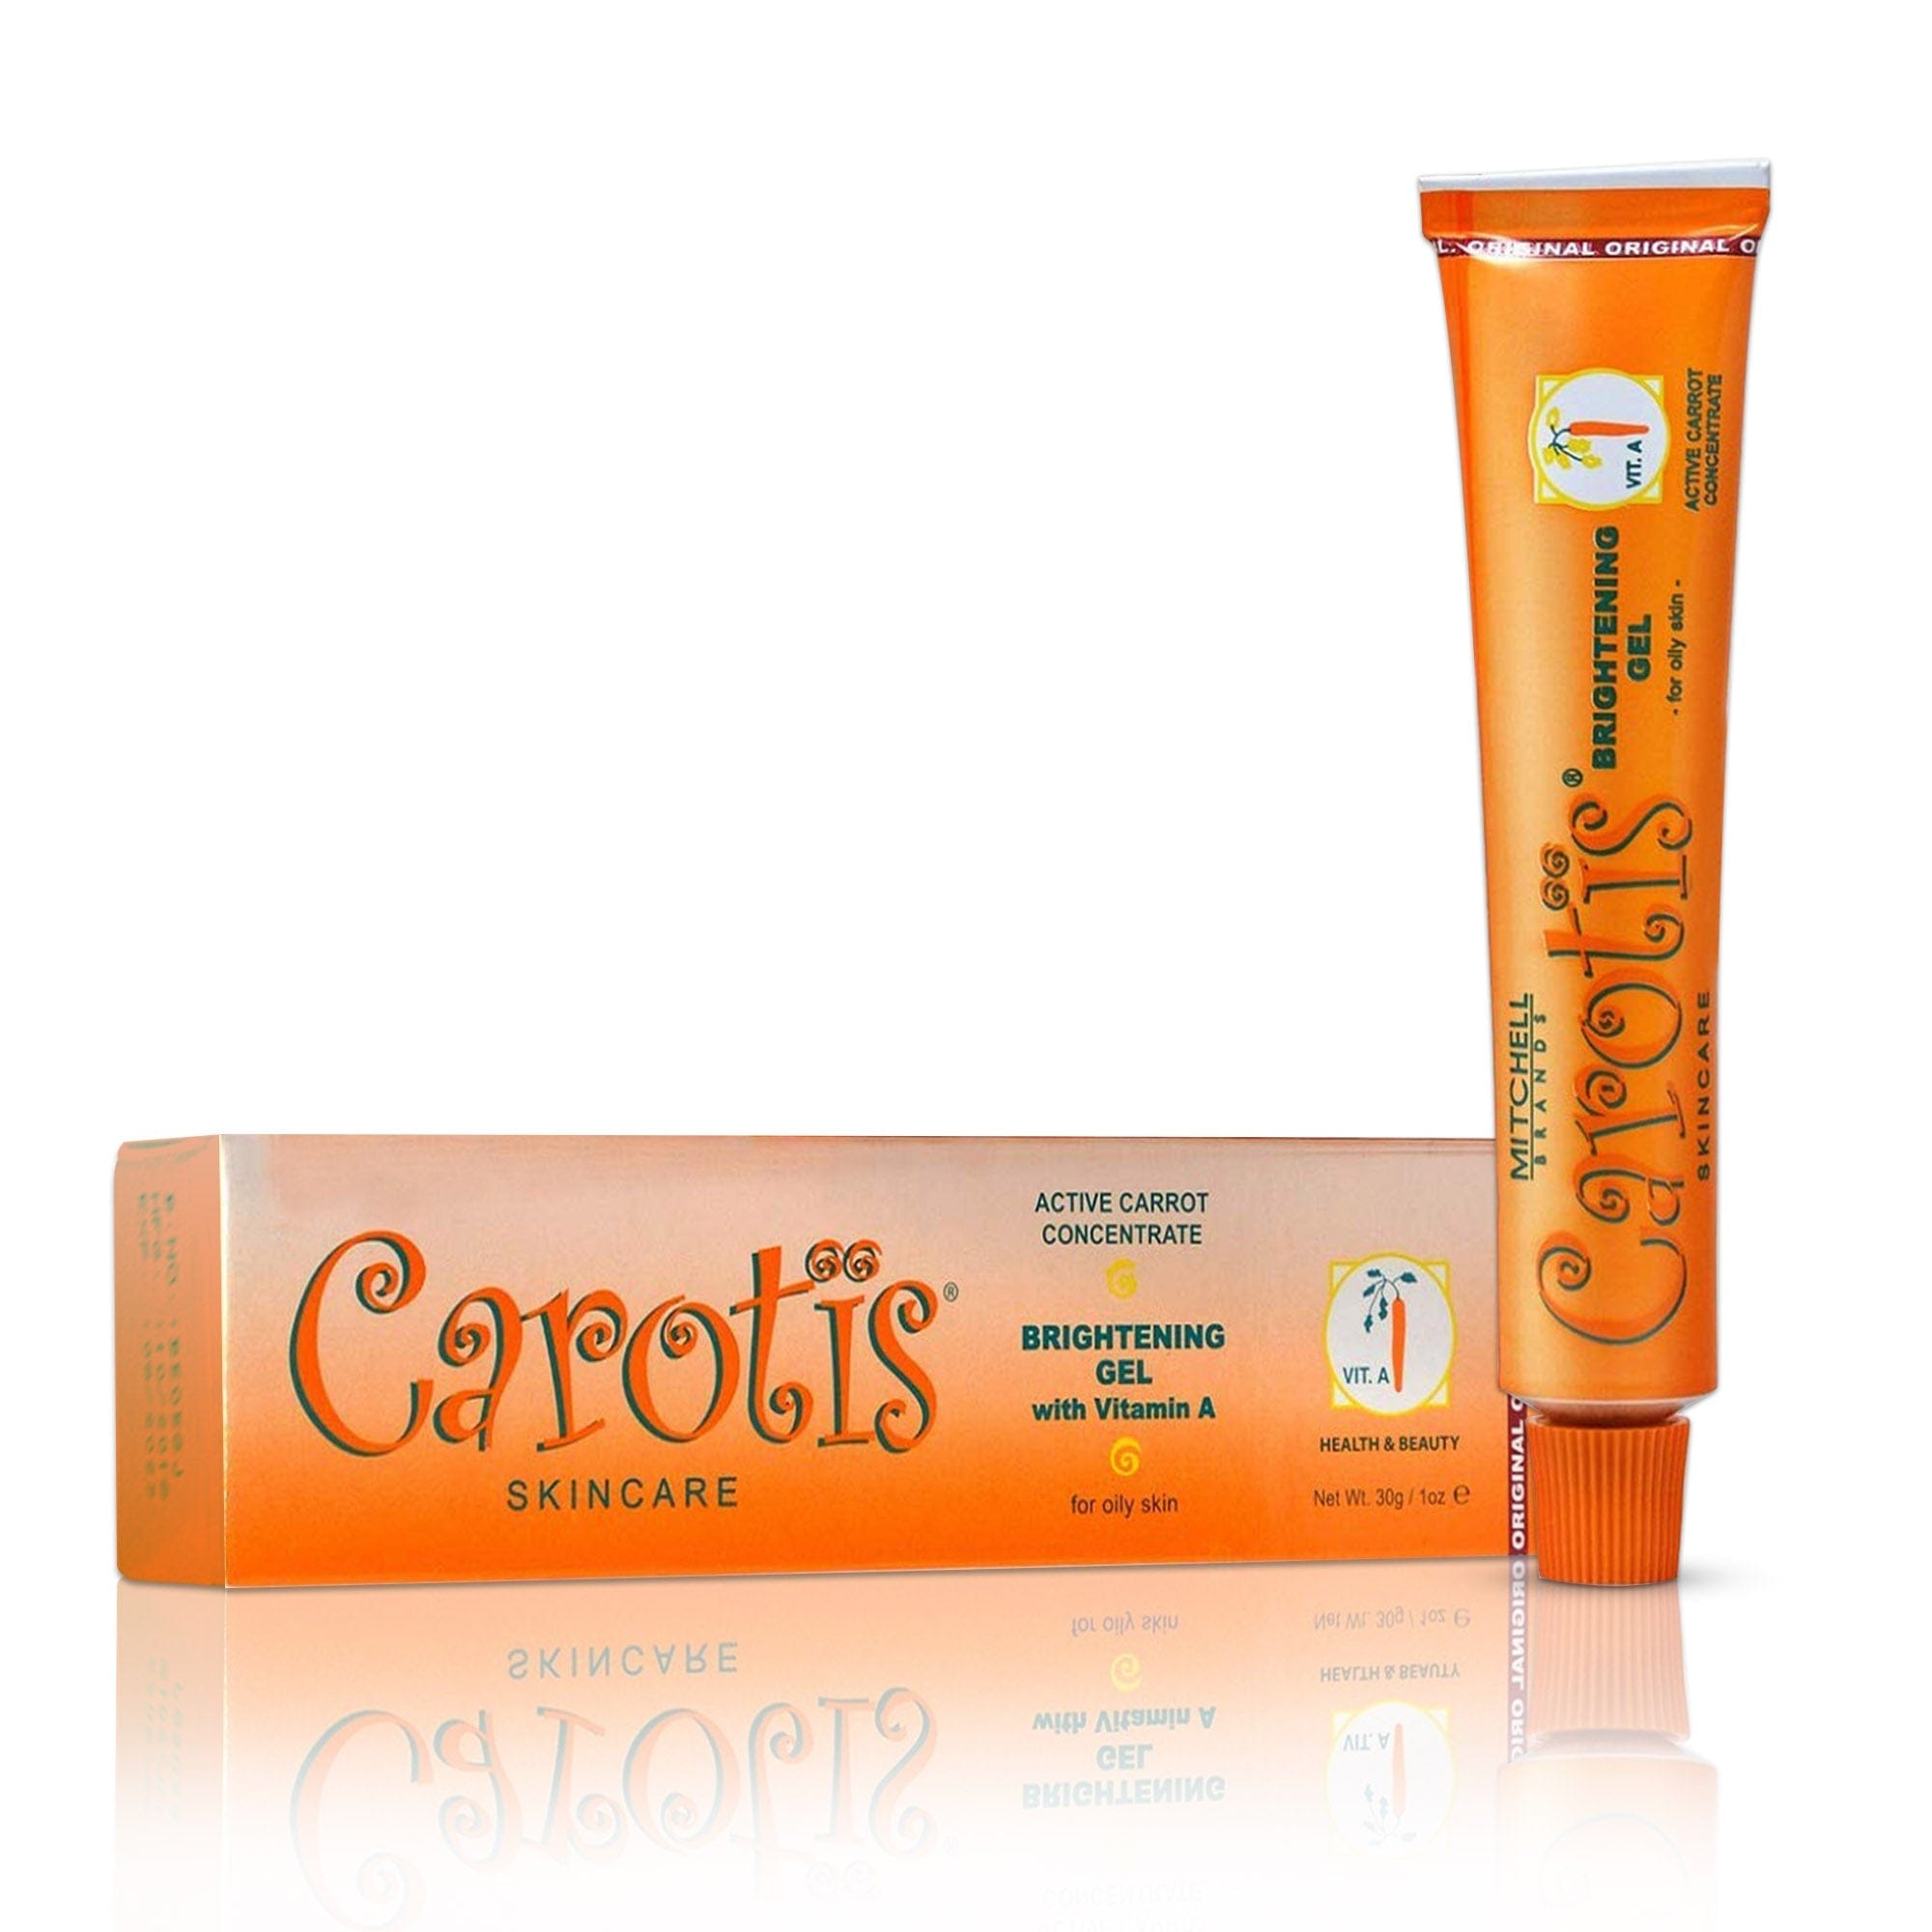 Carotis Brightening Gel with Vitamin A - 30g / 1 fl oz Carotis - Mitchell Brands - Skin Lightening, Skin Brightening, Fade Dark Spots, Shea Butter, Hair Growth Products